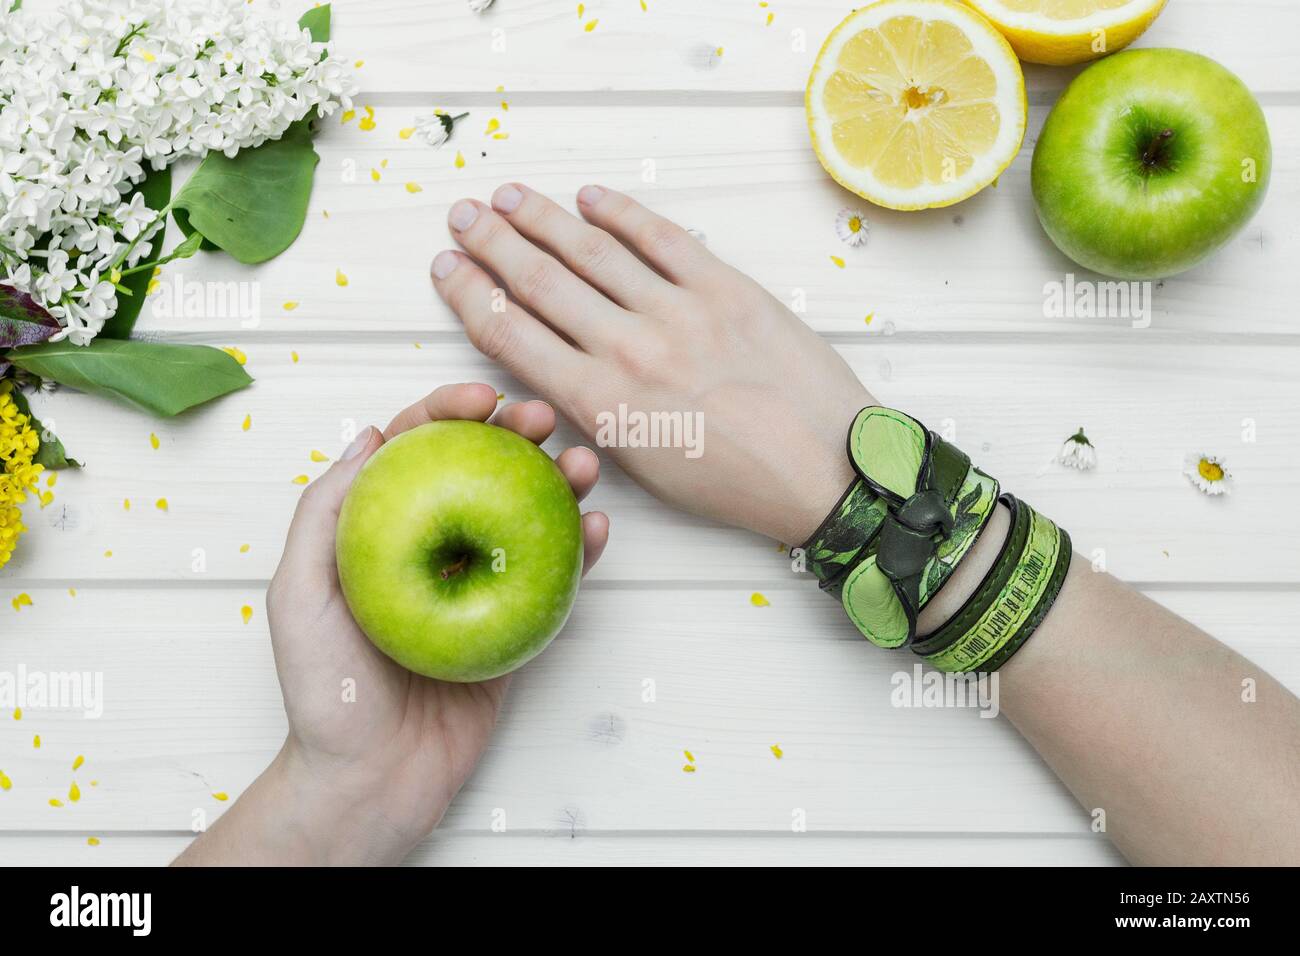 Prise de vue en grand angle d'une personne avec bracelets verts une pomme verte Banque D'Images